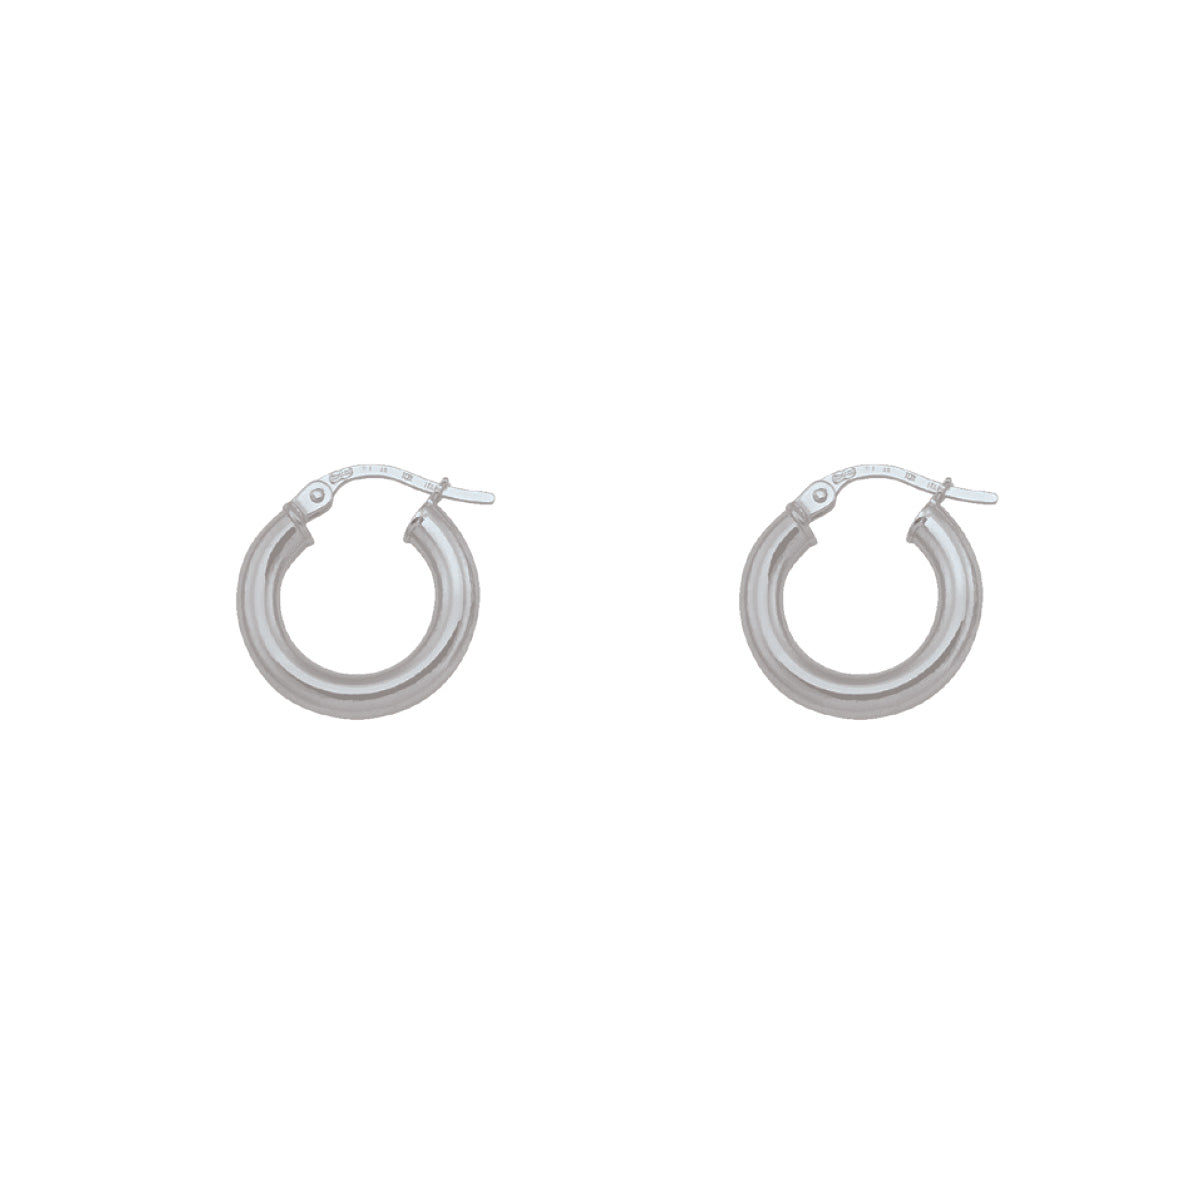 EH0103,  Gold Earrings, Hoops, 3 mm Tubing